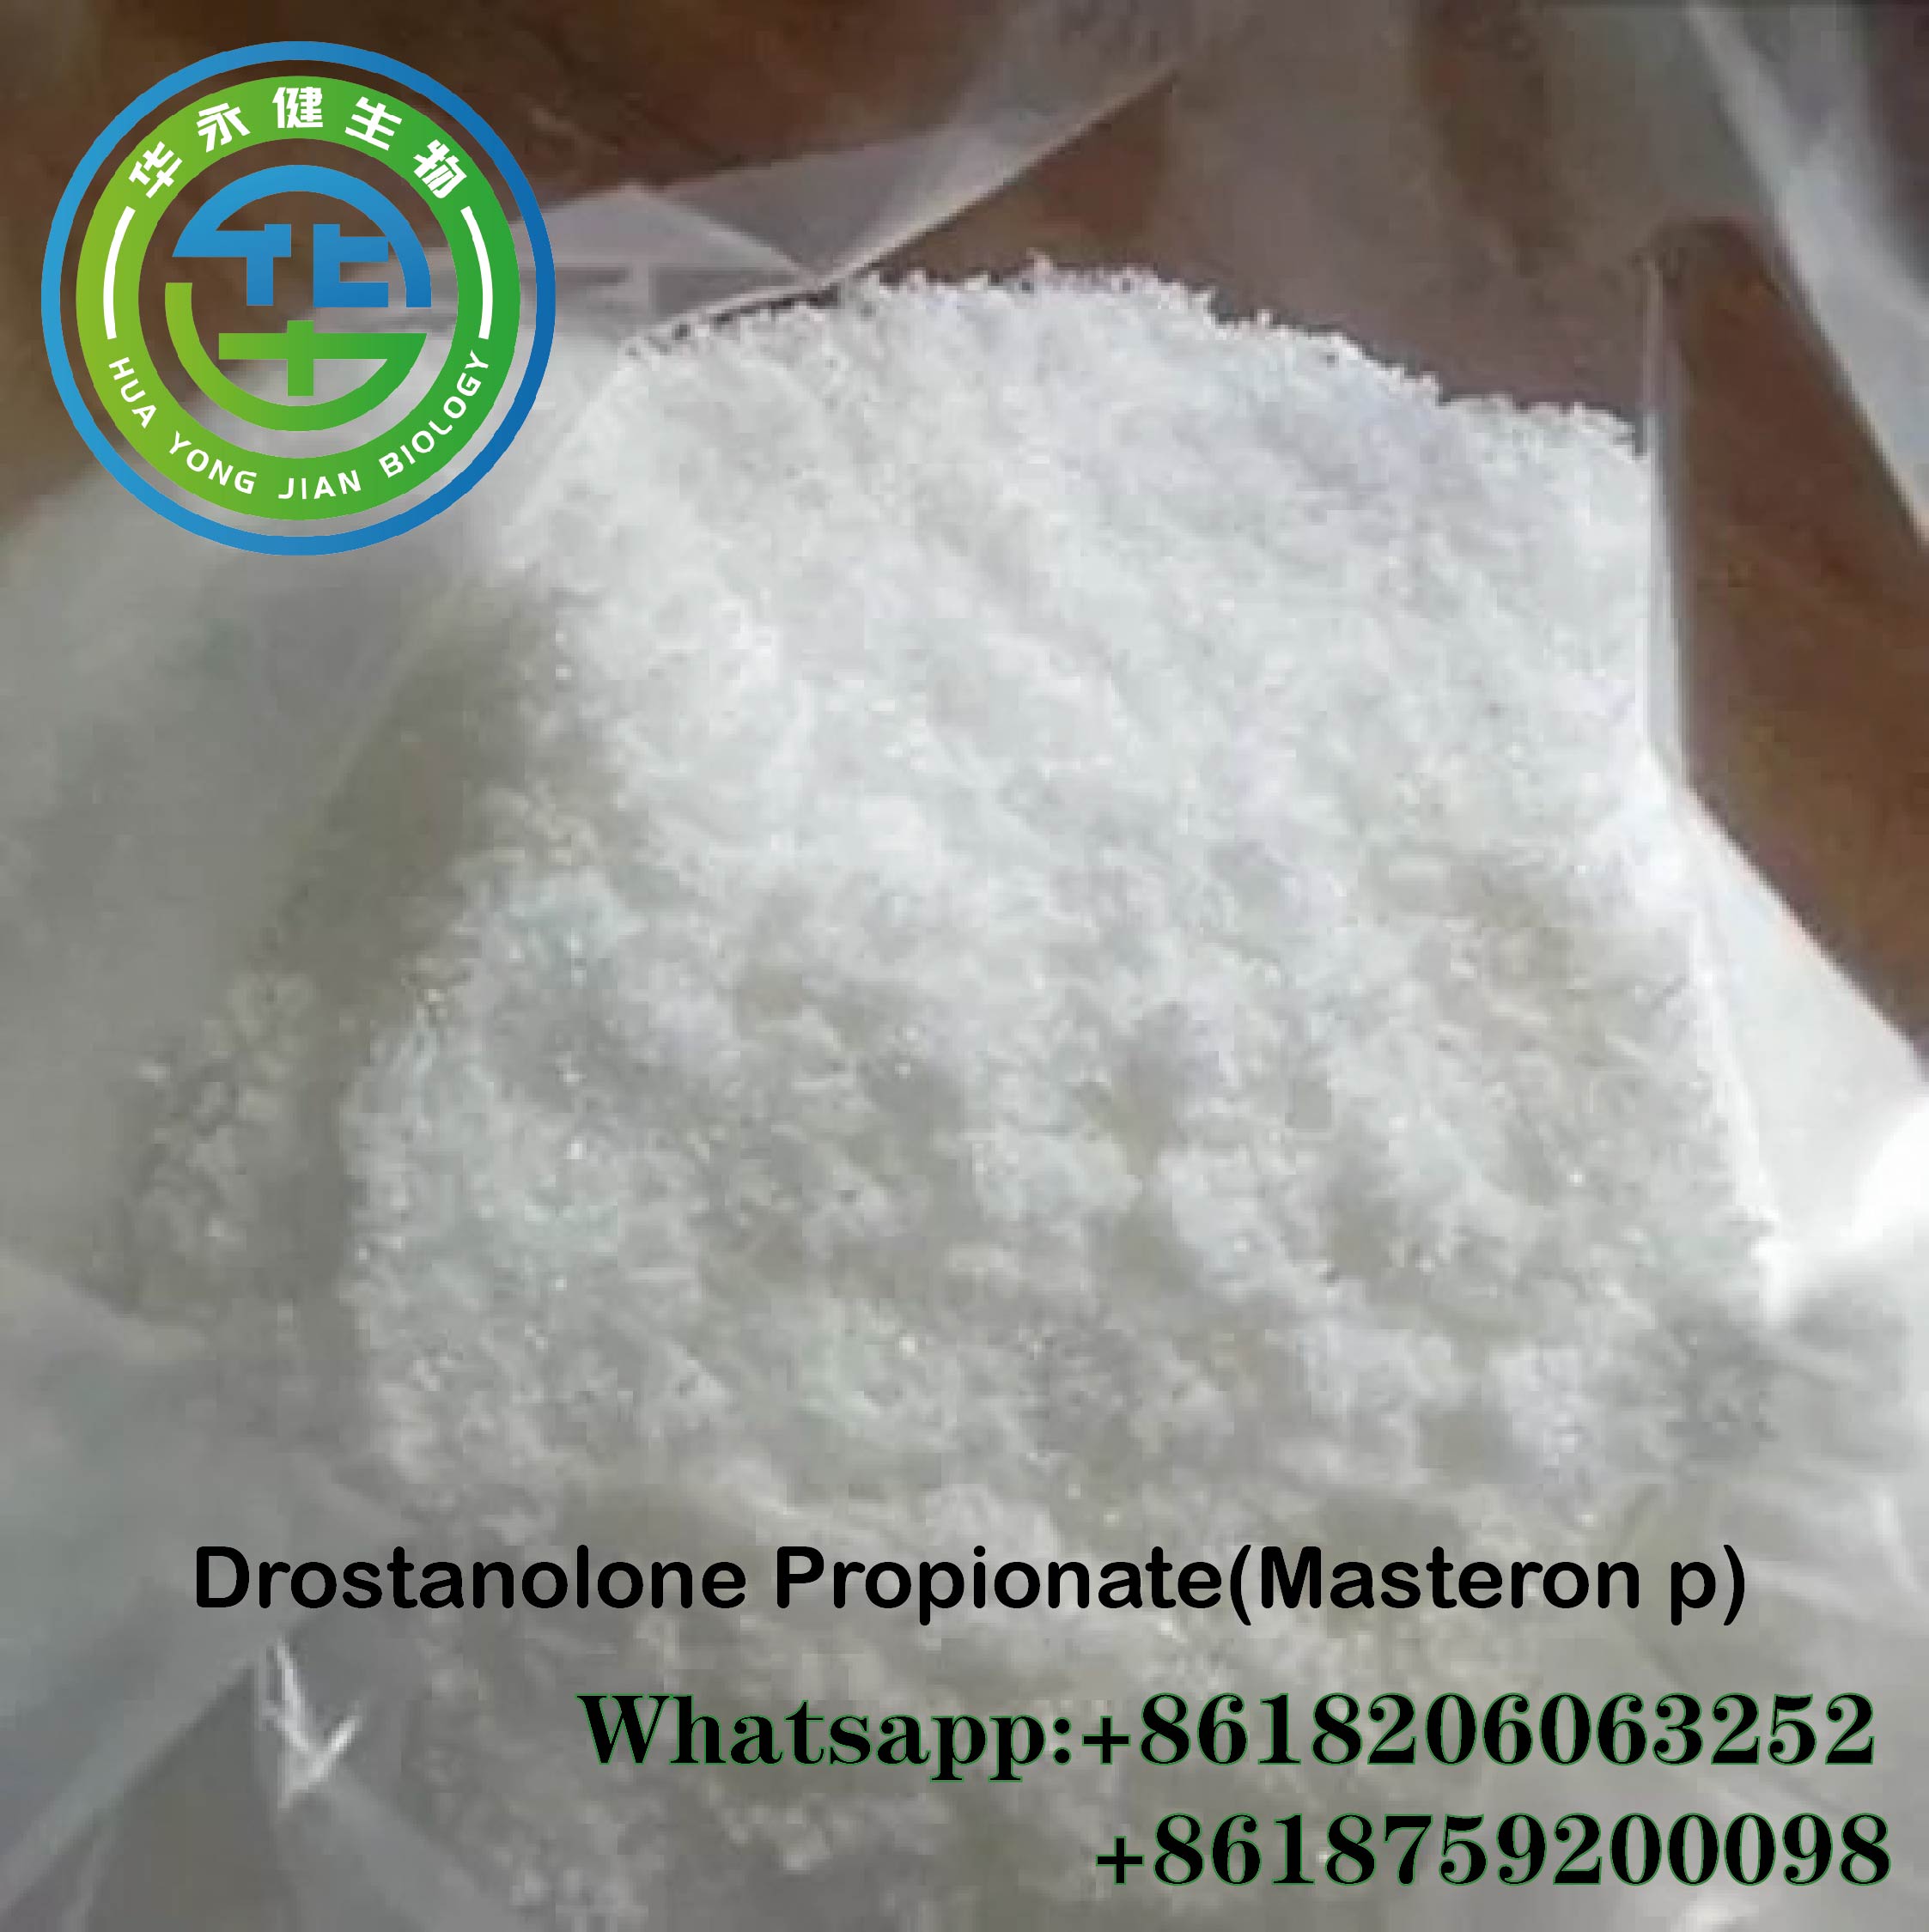 ซื้อ Drostanolone Propionate Steroids Raws Fitness Supplement Steroid Hormone Masteron Powder CasNO.521-12-0 รูปเด่น